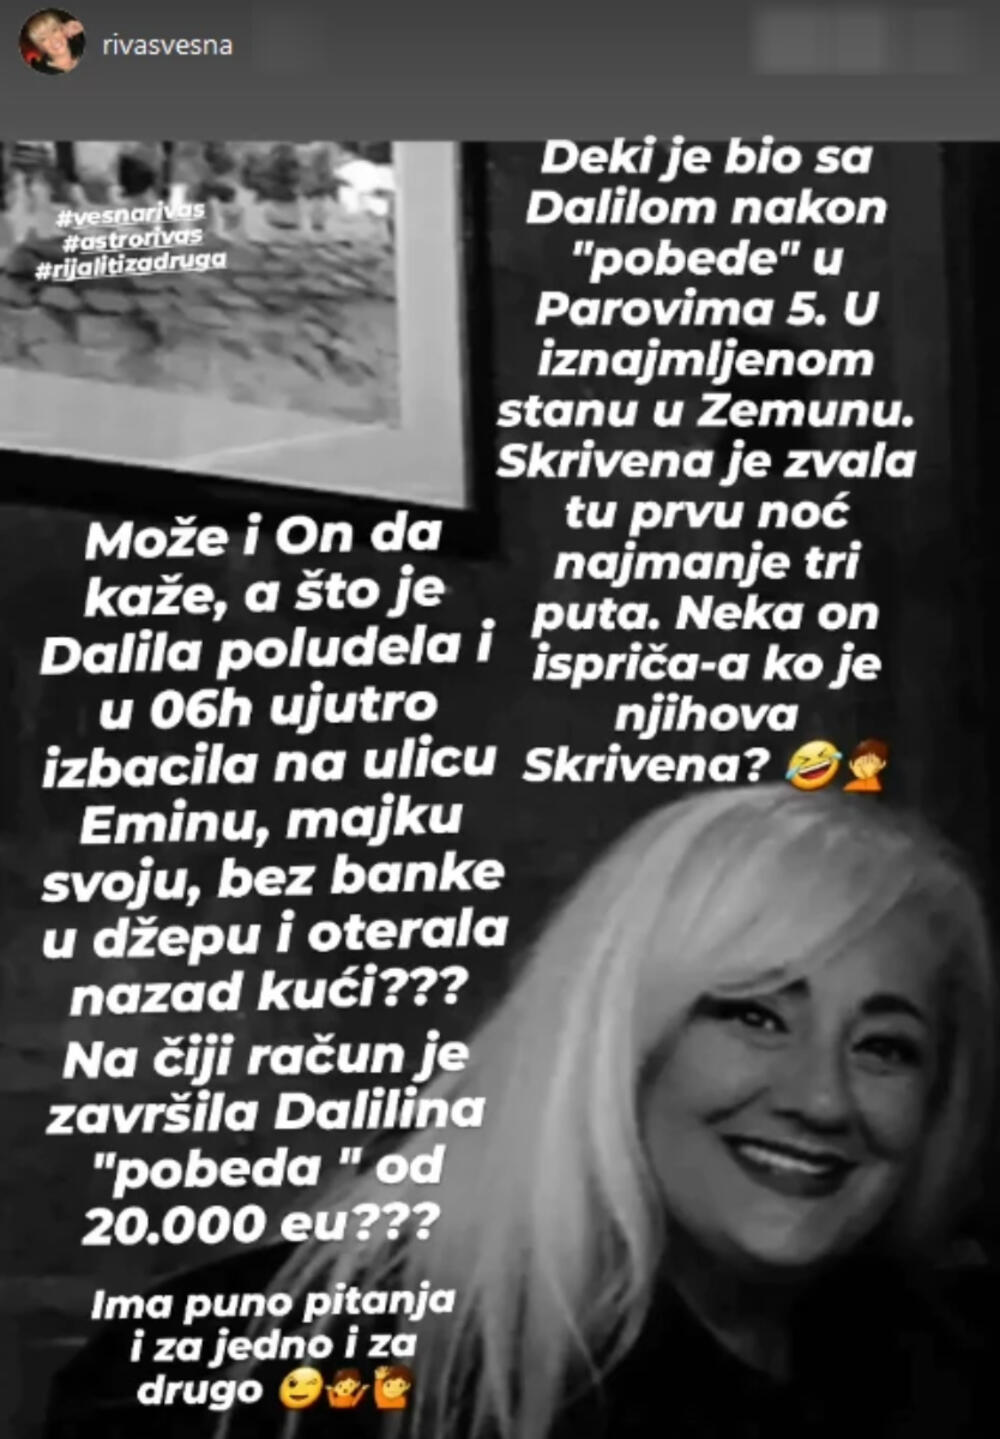 Vesna Rivas, Dalila Dragojević